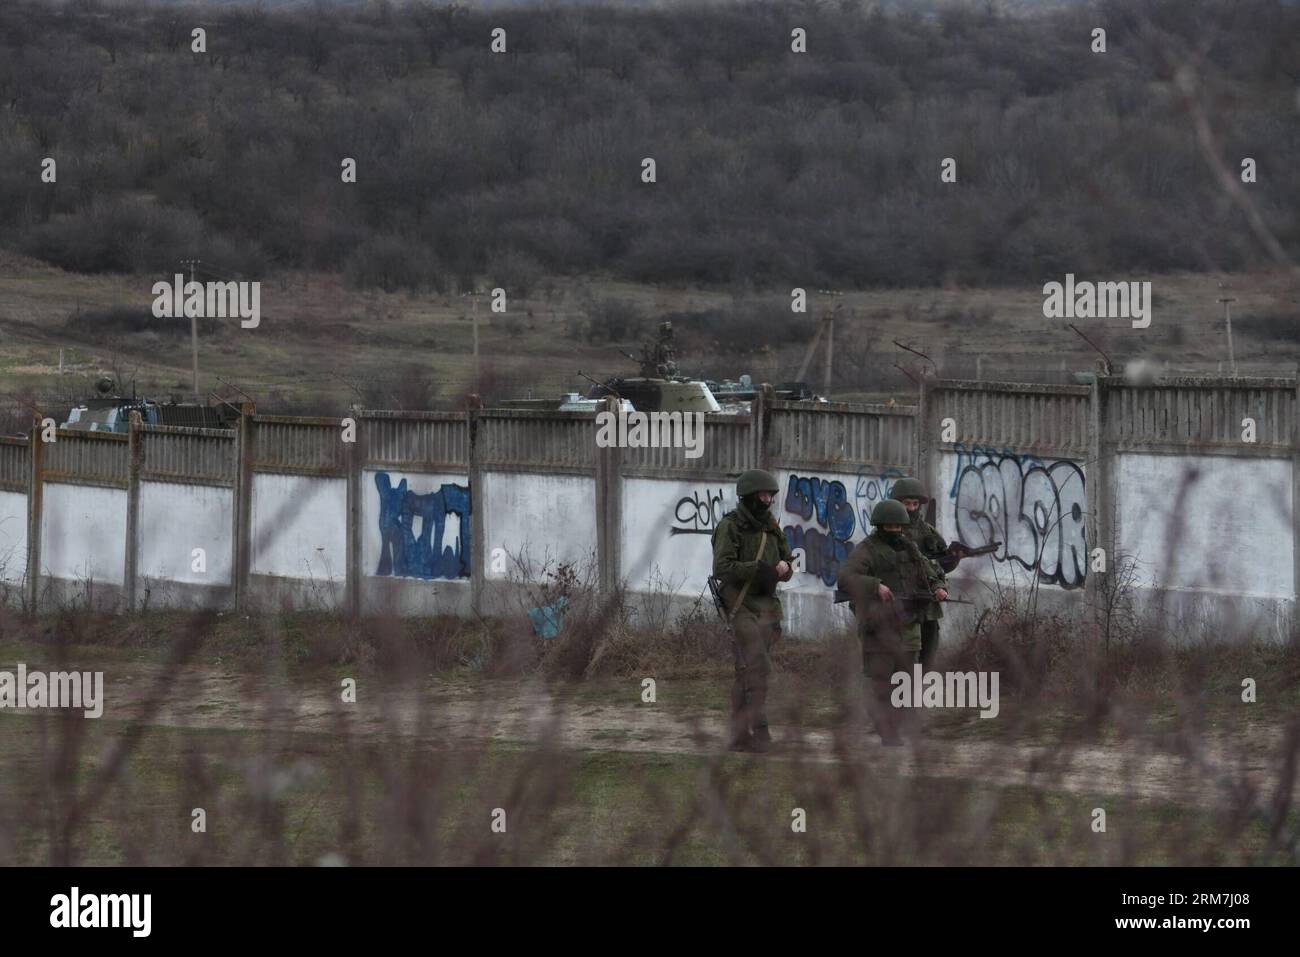 (140305) -- SIMFEROPOL, 5. März 2014 (Xinhua) -- bewaffnete Männer patrouillieren vor einer ukrainischen Militäreinheit im Vorort Simferopol, Hauptstadt der autonomen republik Krim der Ukraine, 4. März 2014. (Xinhua/Wei Dafang) (lyx) UKRAINE-SIMFEROPOL-MILITÄREINHEIT BEWAFFNETE MÄNNER PUBLICATIONxNOTxINxCHN Simferopol 5. März 2014 XINHUA BEWAFFNETE Männer Patrouille außerhalb einer ukrainischen Militäreinheit in der Vorstadt Simferopol Hauptstadt der Ukraine S Autonome Republik Krim 4. März 2014 XINNOHUA Wei DeixBLINxMUNIxMUNIxMUNIxMUNIxMUNIxMUNKUNKUNKUNKUNKUNKUNKUNS Stockfoto